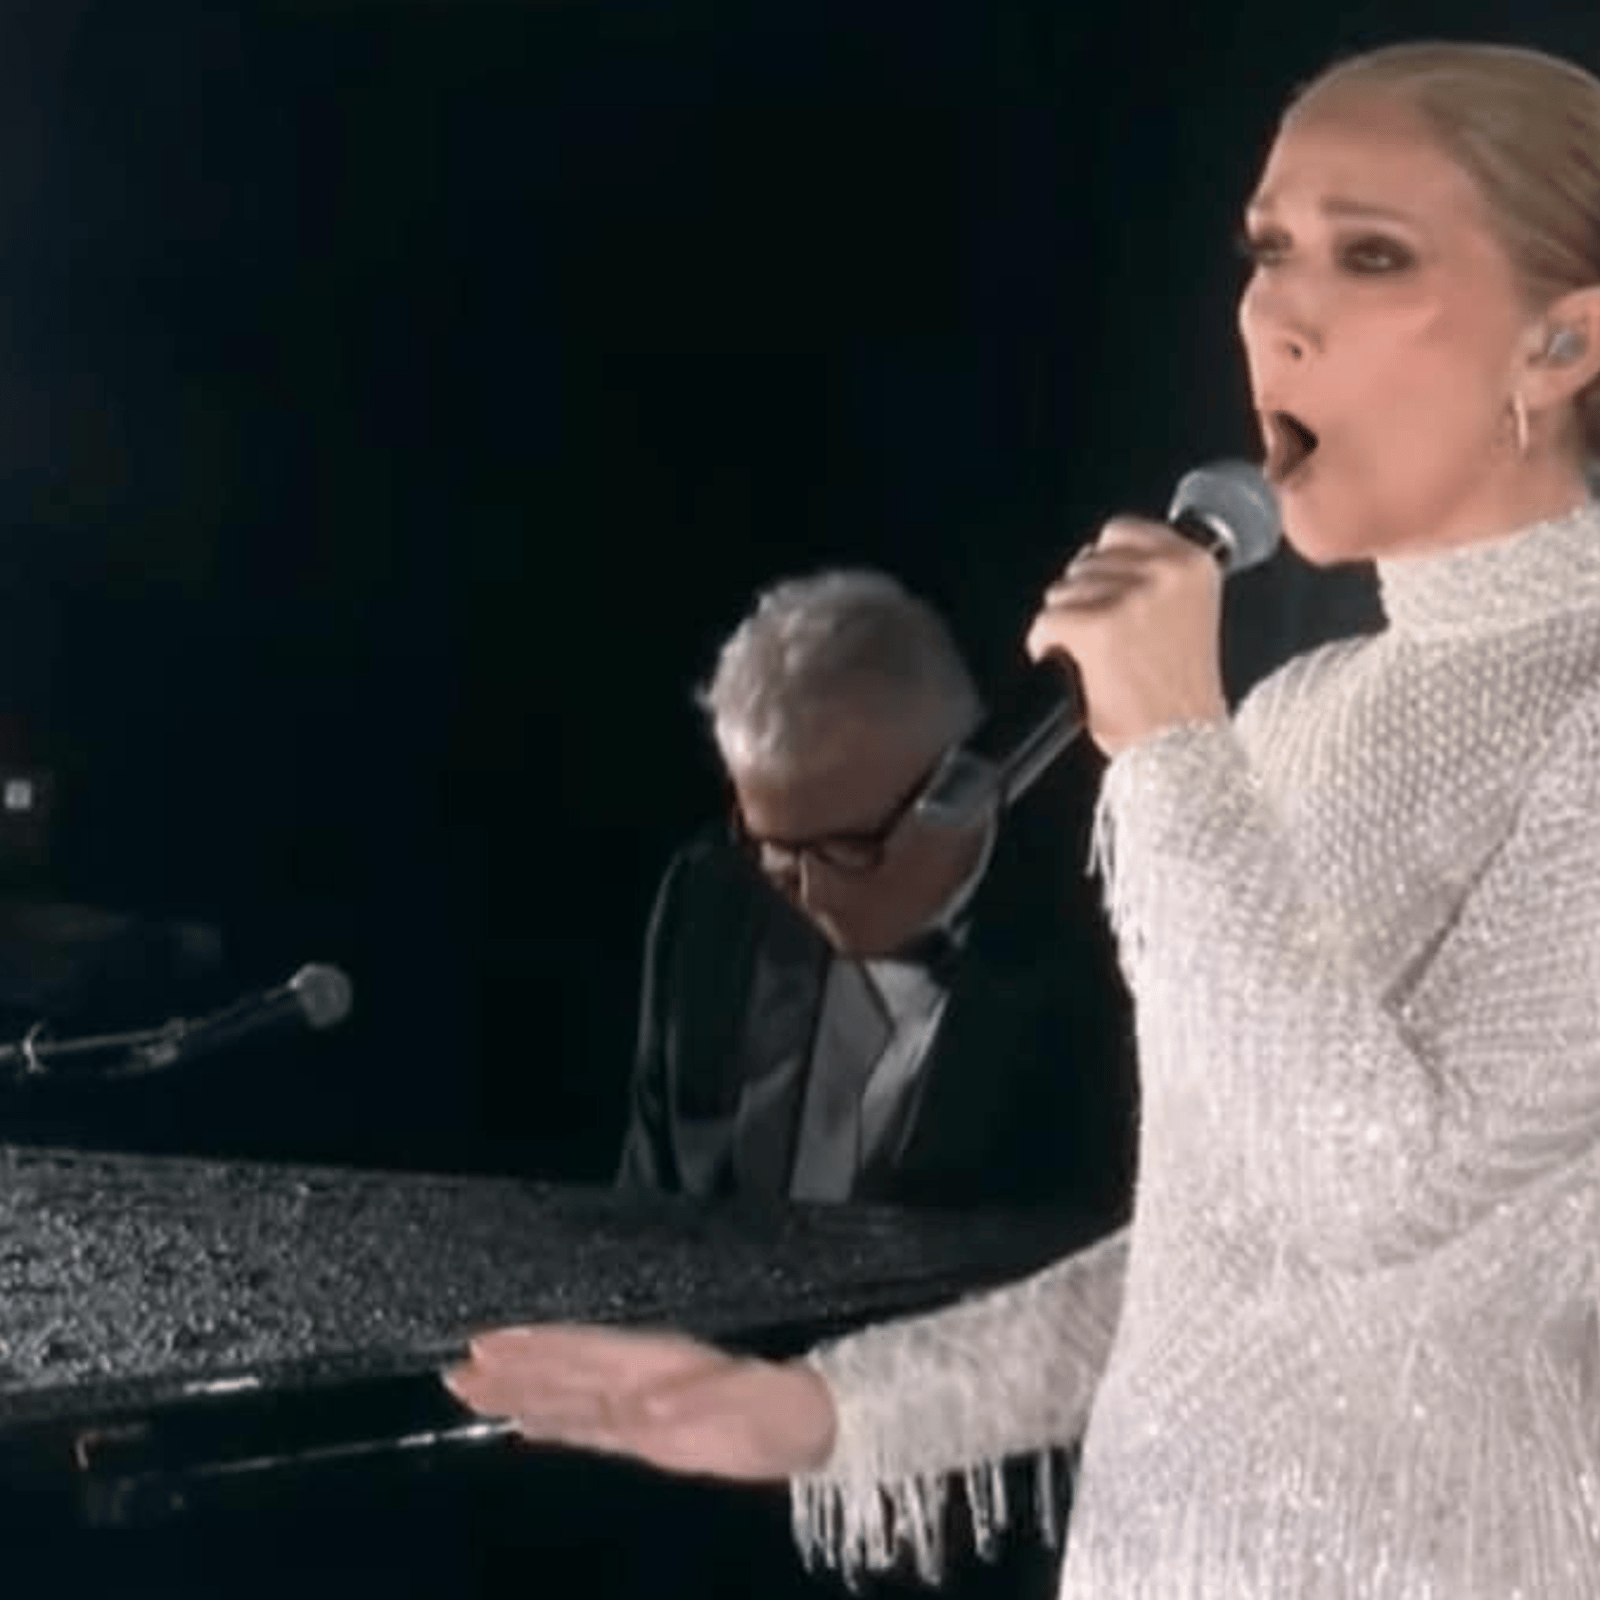 Les internautes livrent le fond de leurs pensées concernant la performance de Céline Dion à Paris